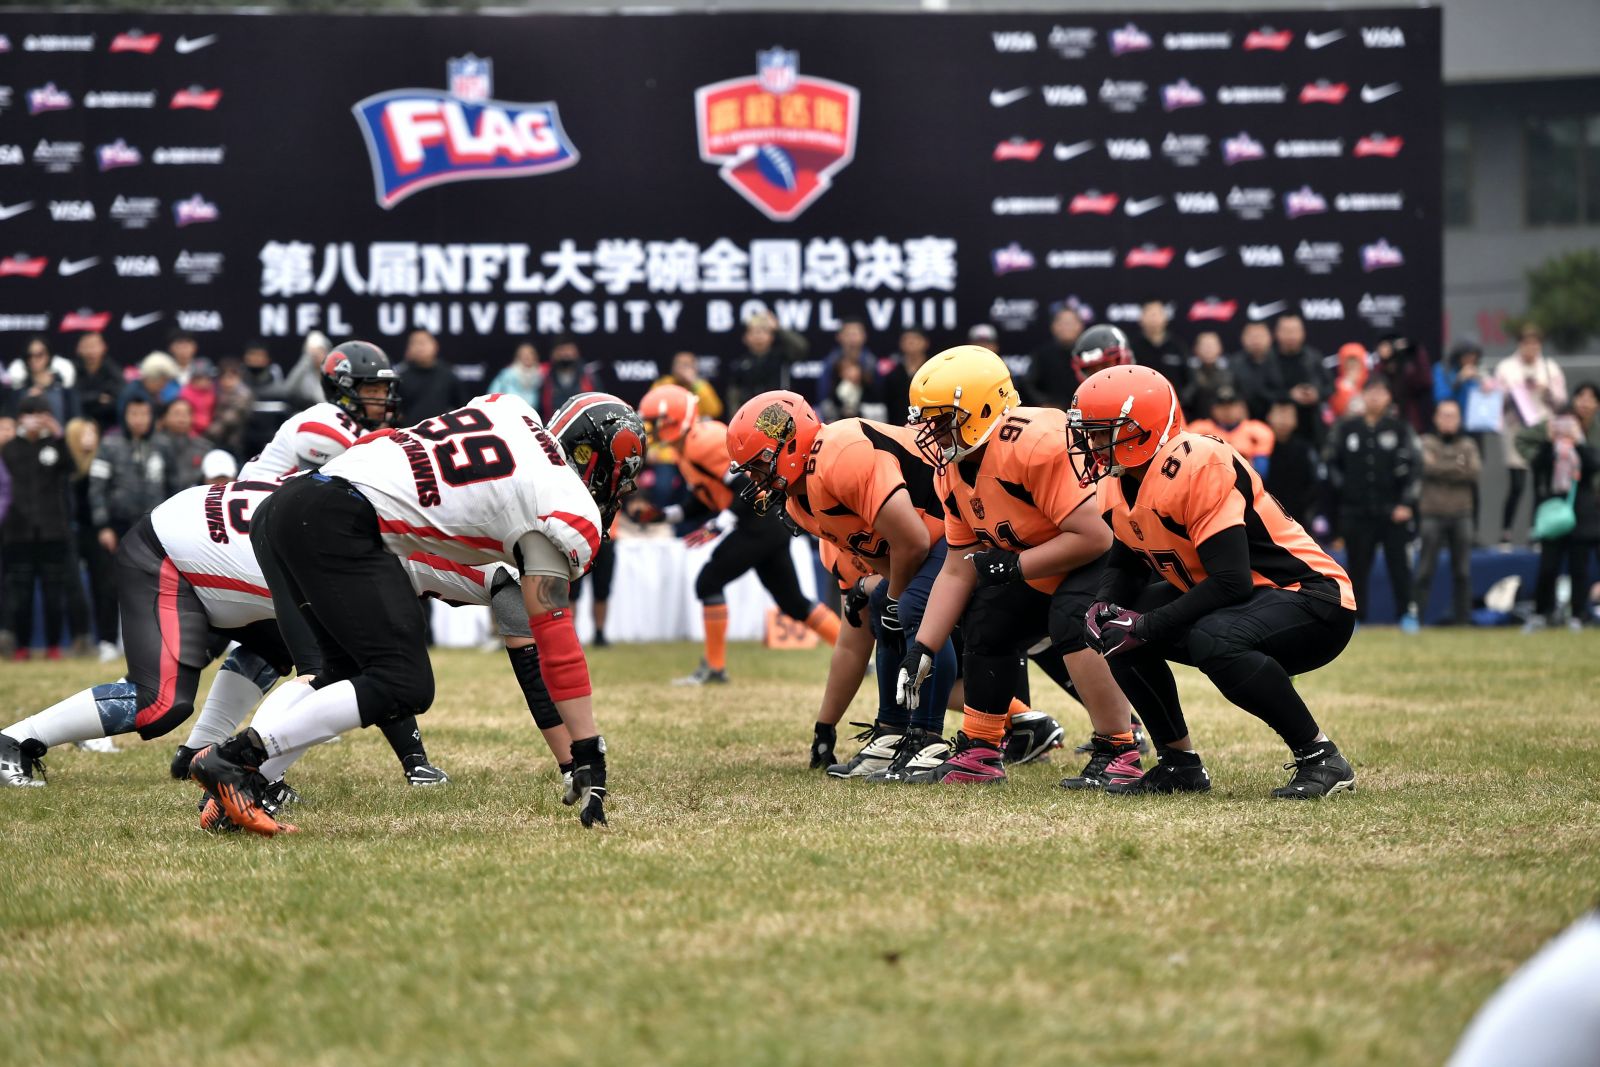 广州中医药大学卫冕NFL大学碗,橄榄球热情点